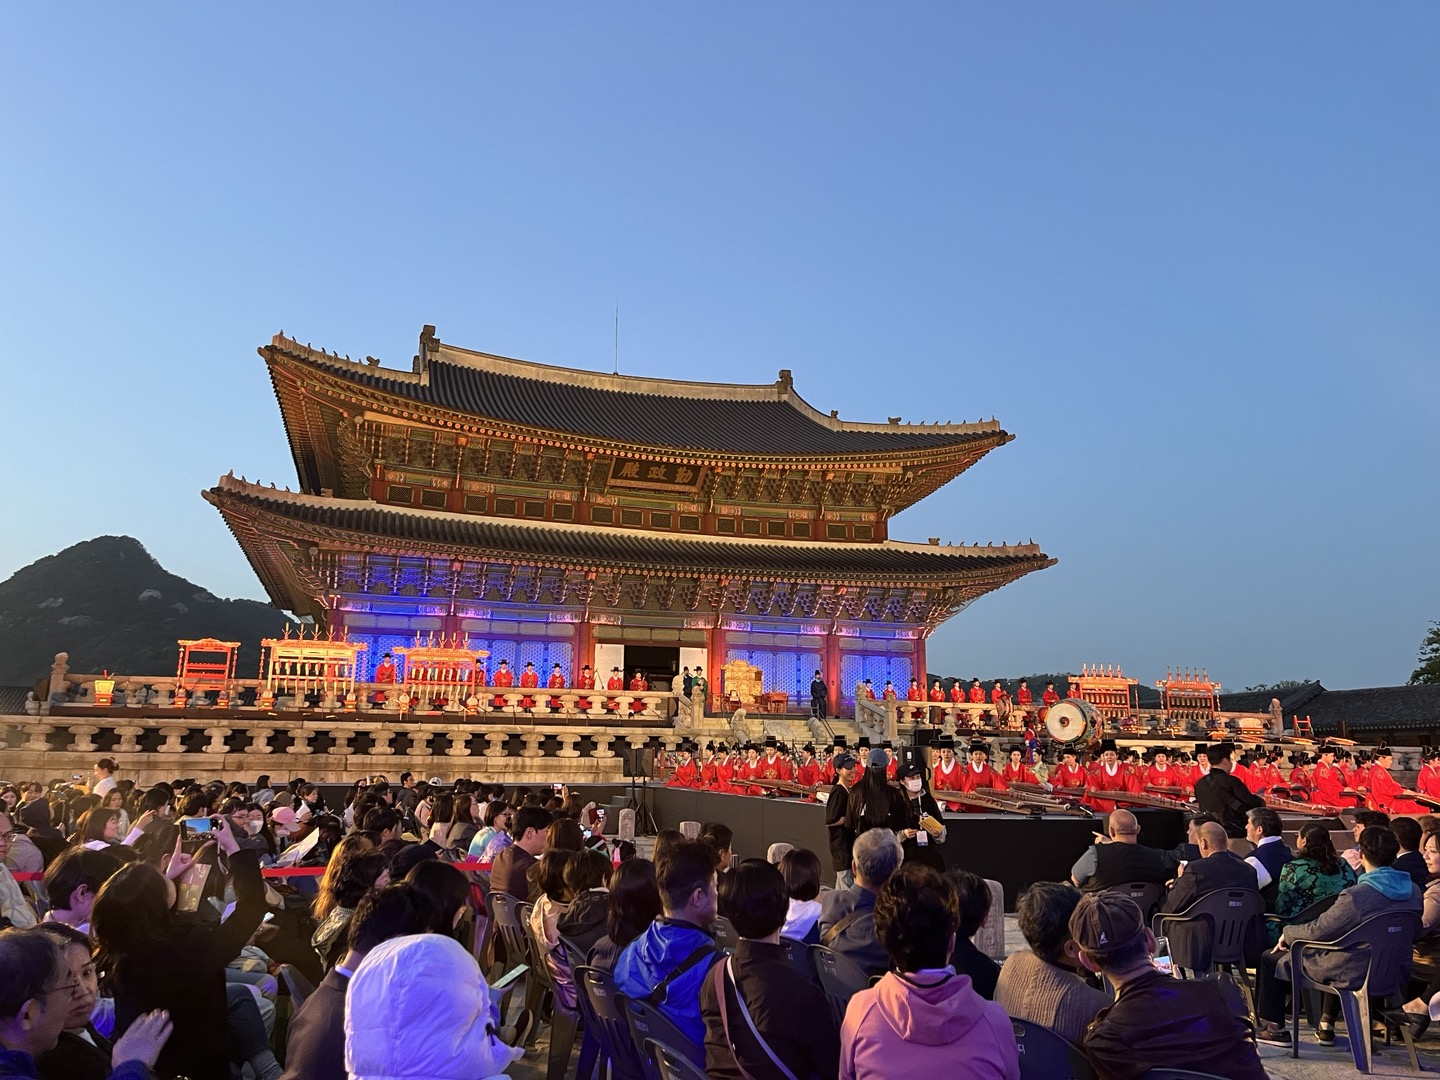 궁중문화축전 개막제를 관람하기 위해 관람객들이 모여있다.